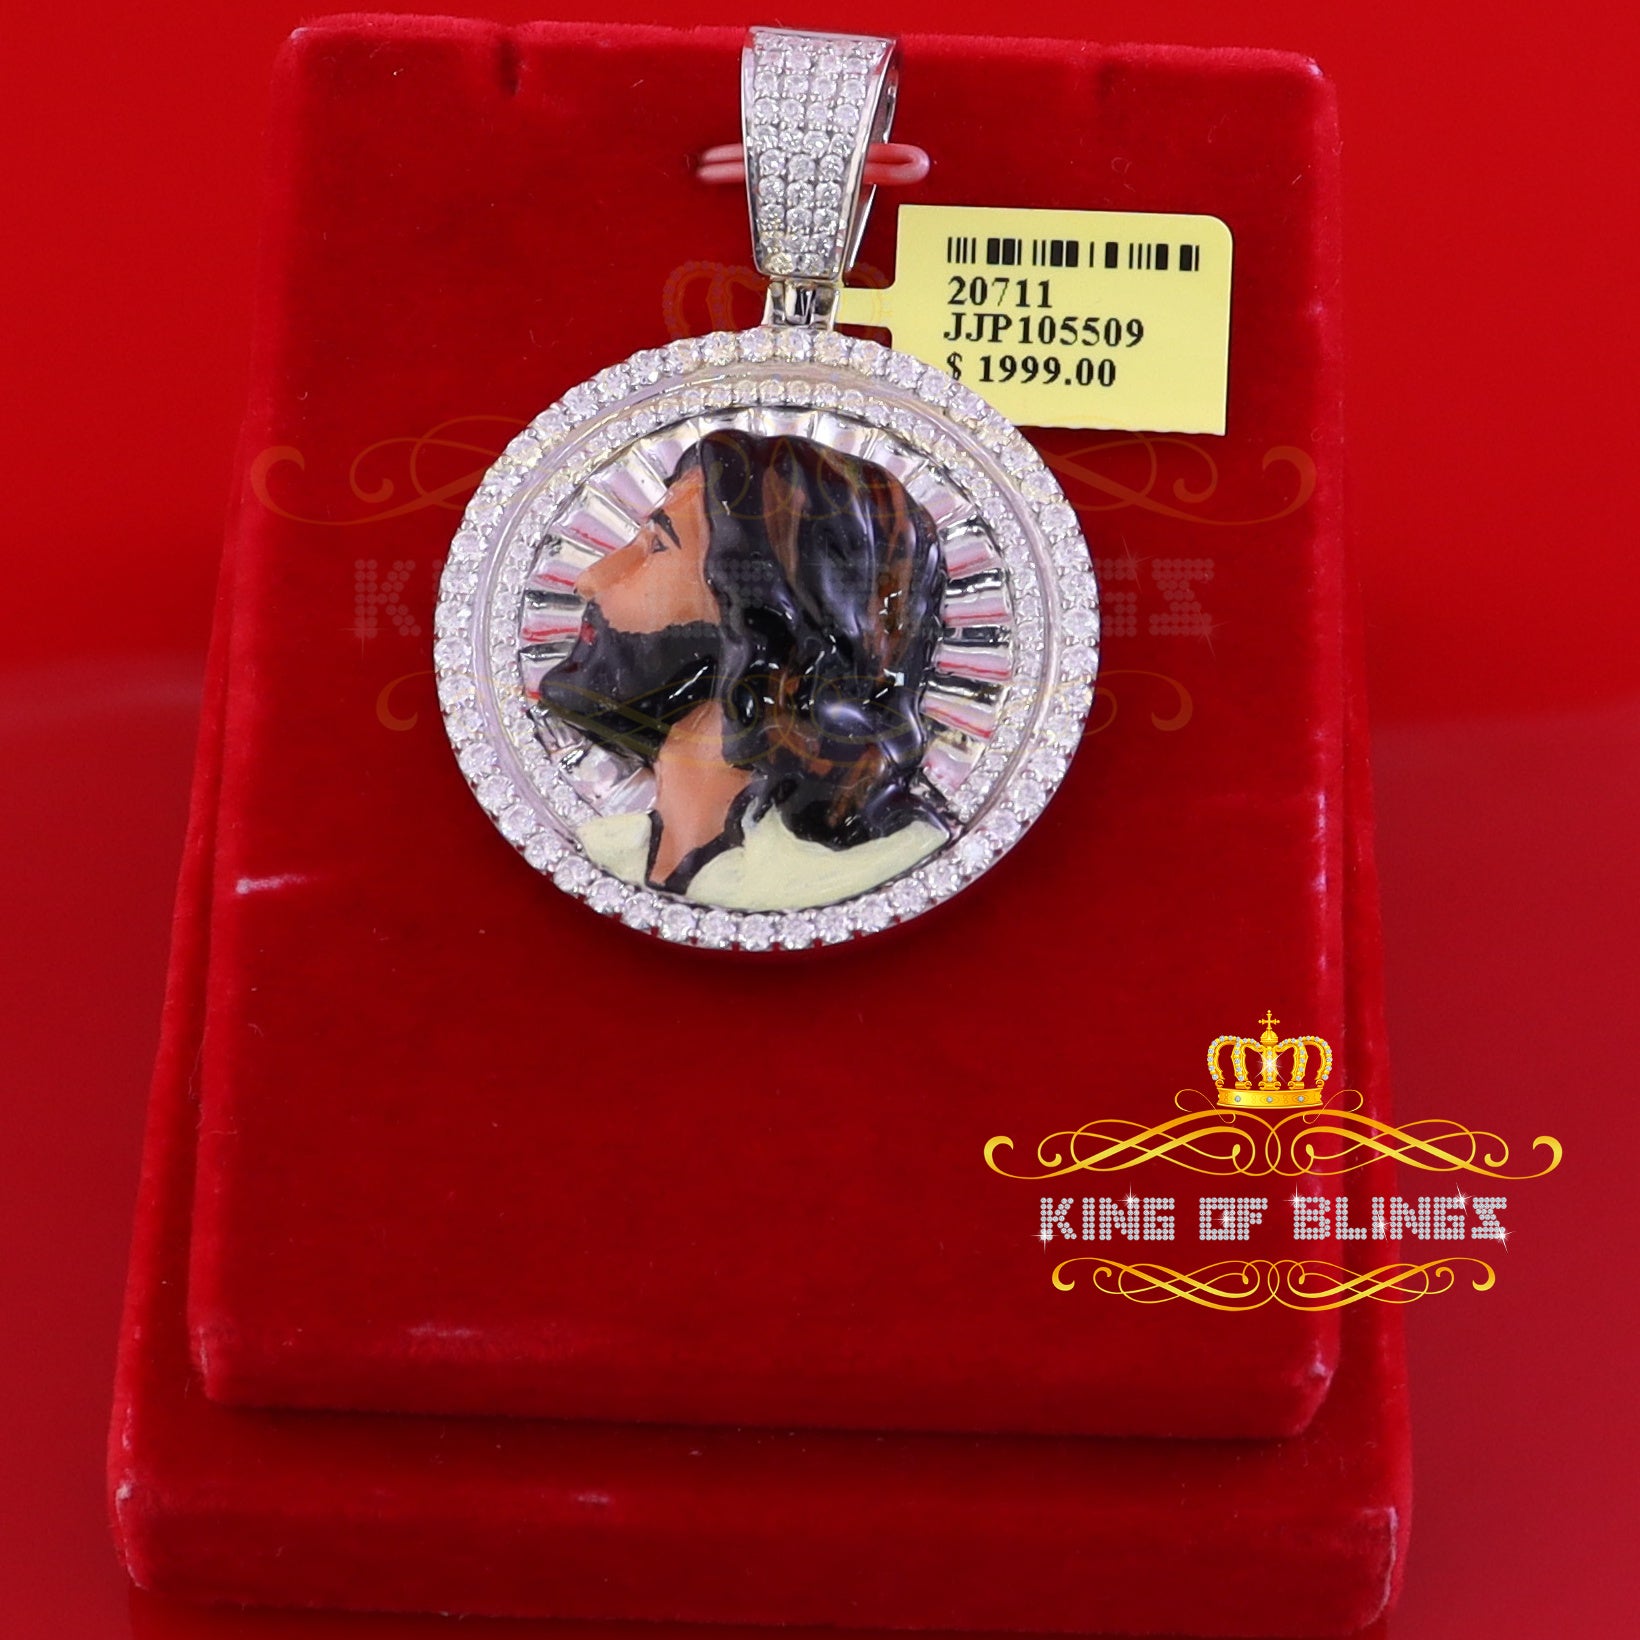 King Of Bling's 1.50 inch 925 Silver Enamel JESUS White Pendant 3.00ct Moissanite for He/She KING OF BLINGS